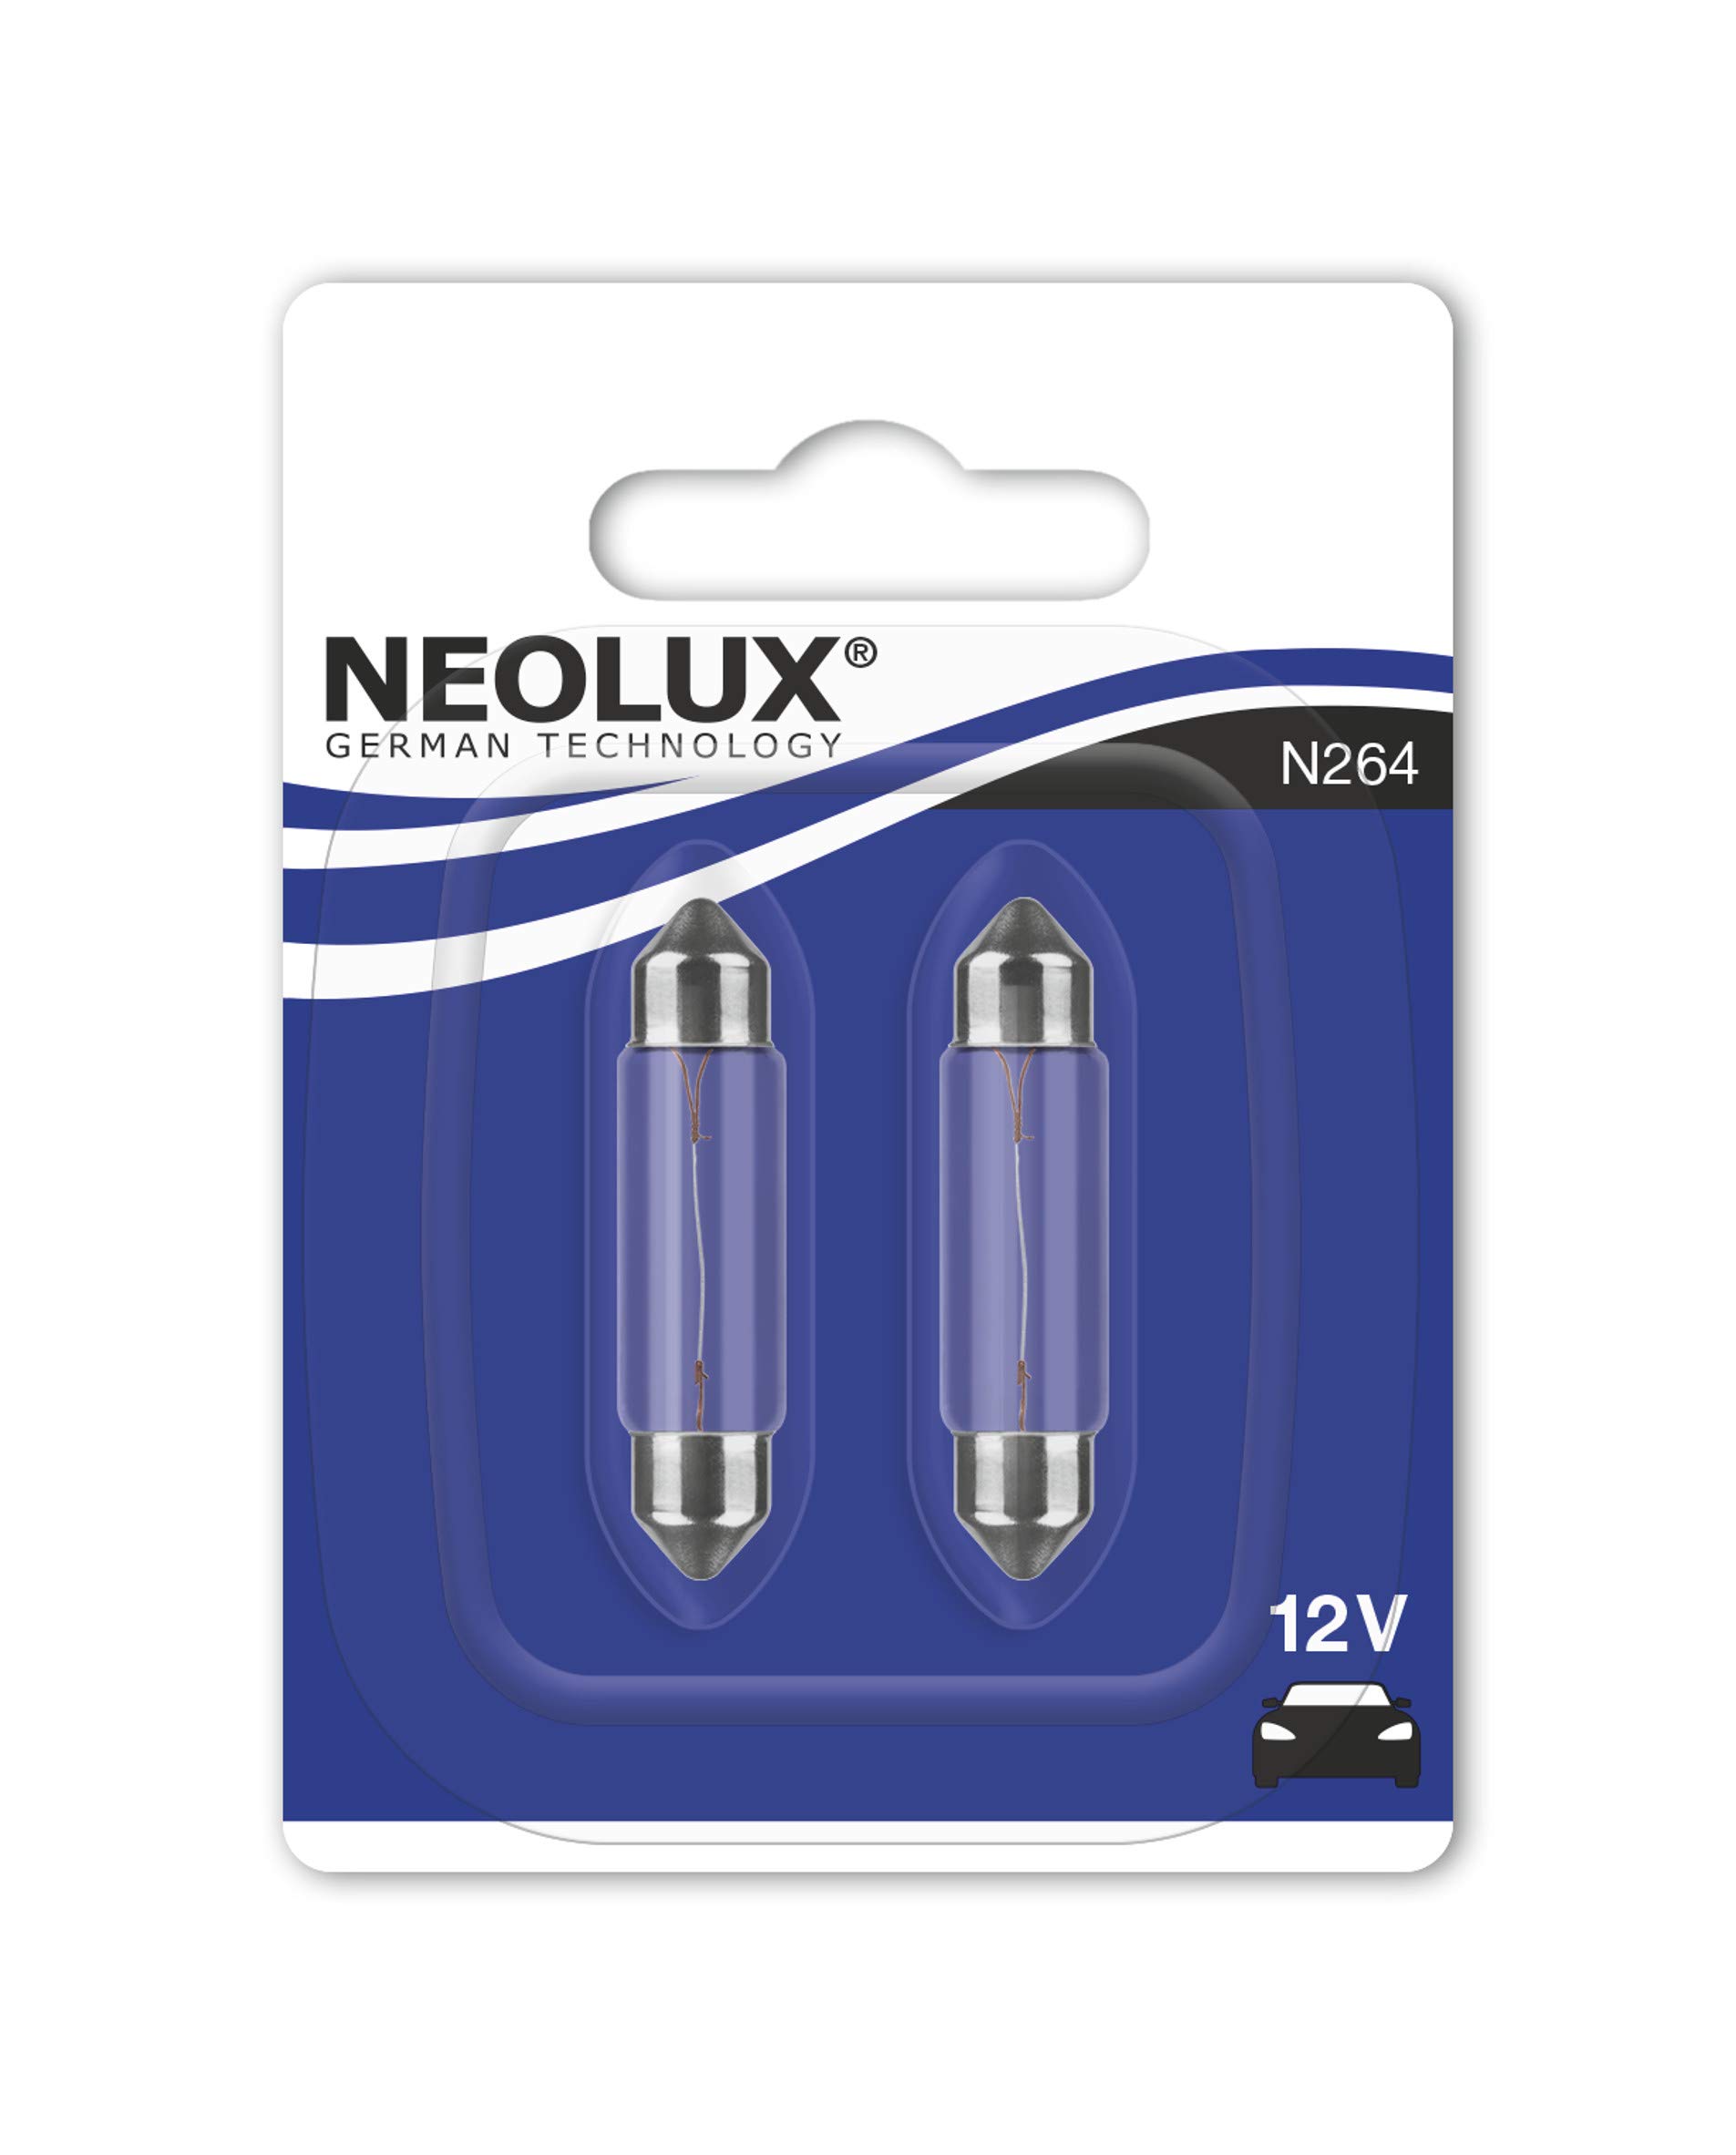 Neolux N264 Soffitten Leuchtmittel Standard C10W 10W 12V, 2 Stück von NEOLUX